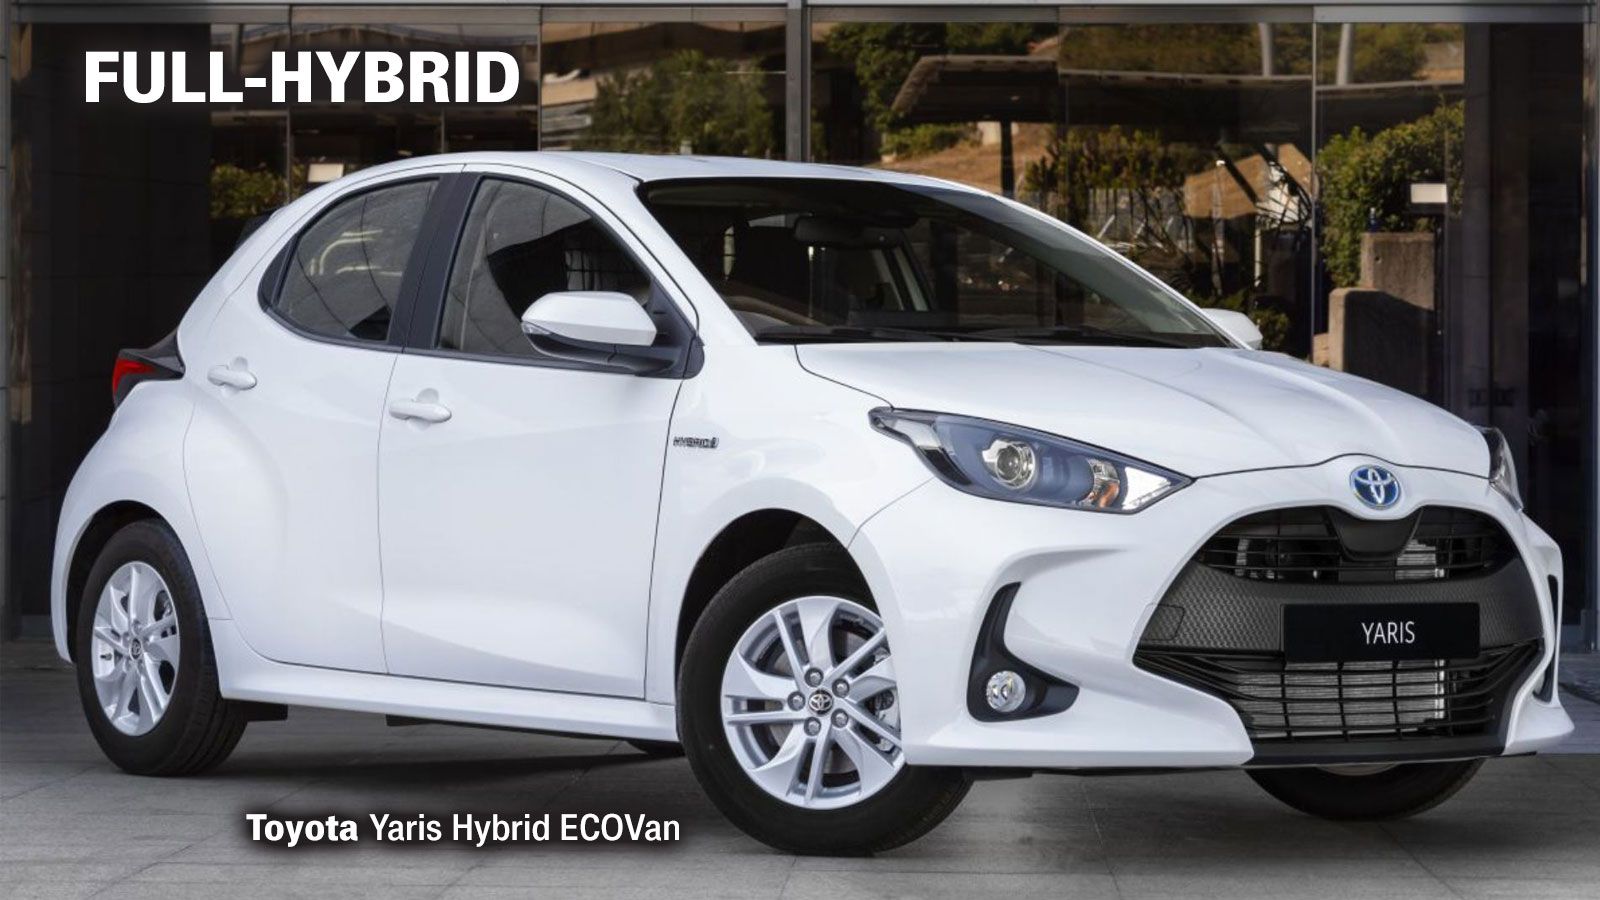 Το υβριδικό Toyota Yaris Hybrid ECOVan διαθέτει έναν 1.500άρη 3κύλινδρο κινητήρα βενζίνης, ένα ηλεκτρικό μοτέρ και μία μικρή μπαταρία. Αποδίδει συνδυαστικά 116 ίππους ισχύος και 141 Nm ροπής, ενώ υπόσ